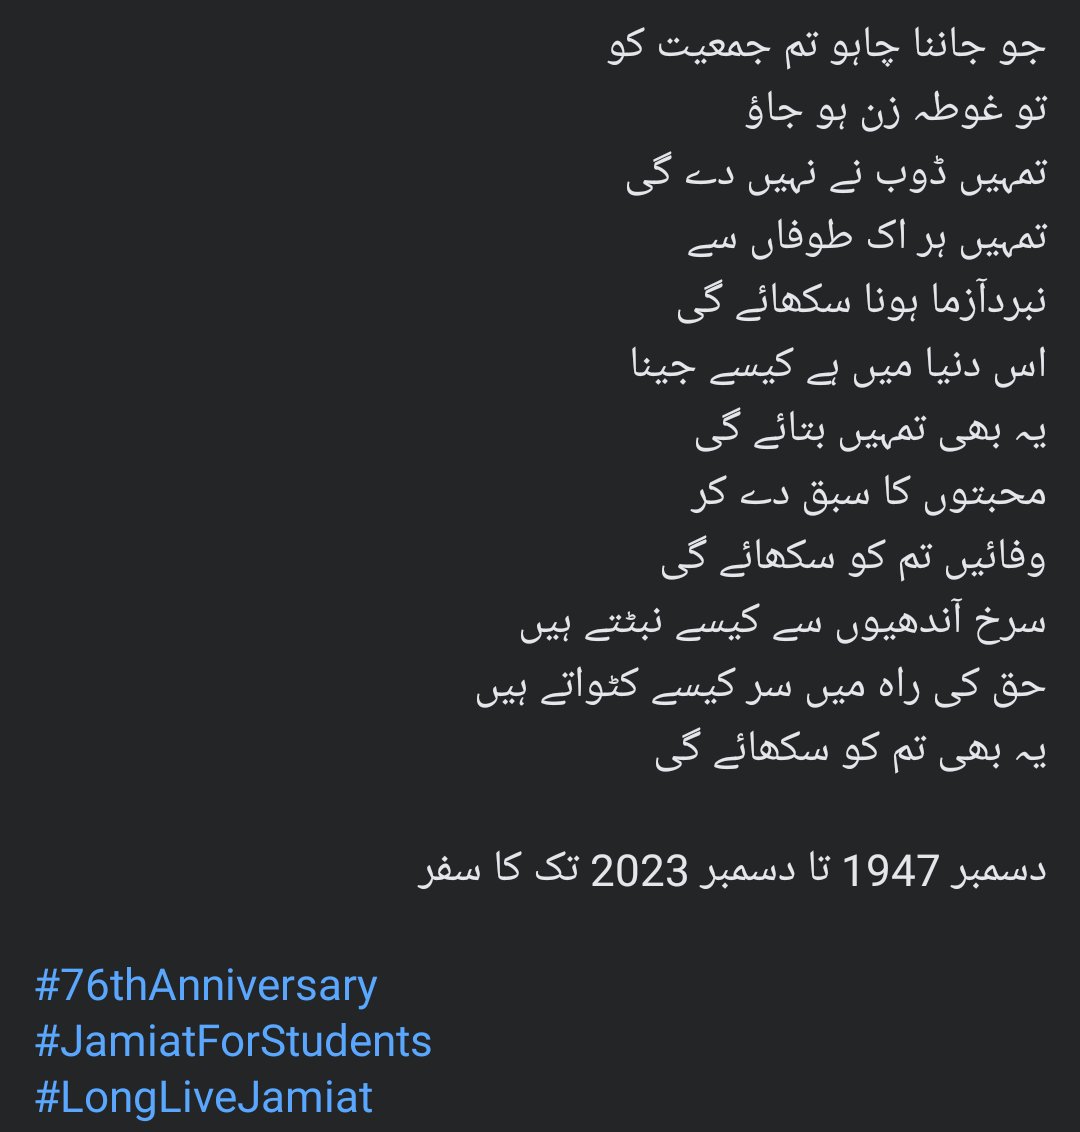 دسمبر 1947 تا دسمبر 2023 تک کا سفر 

#76thAnniversary
#JamiatForStudents
#LongLiveJamiat